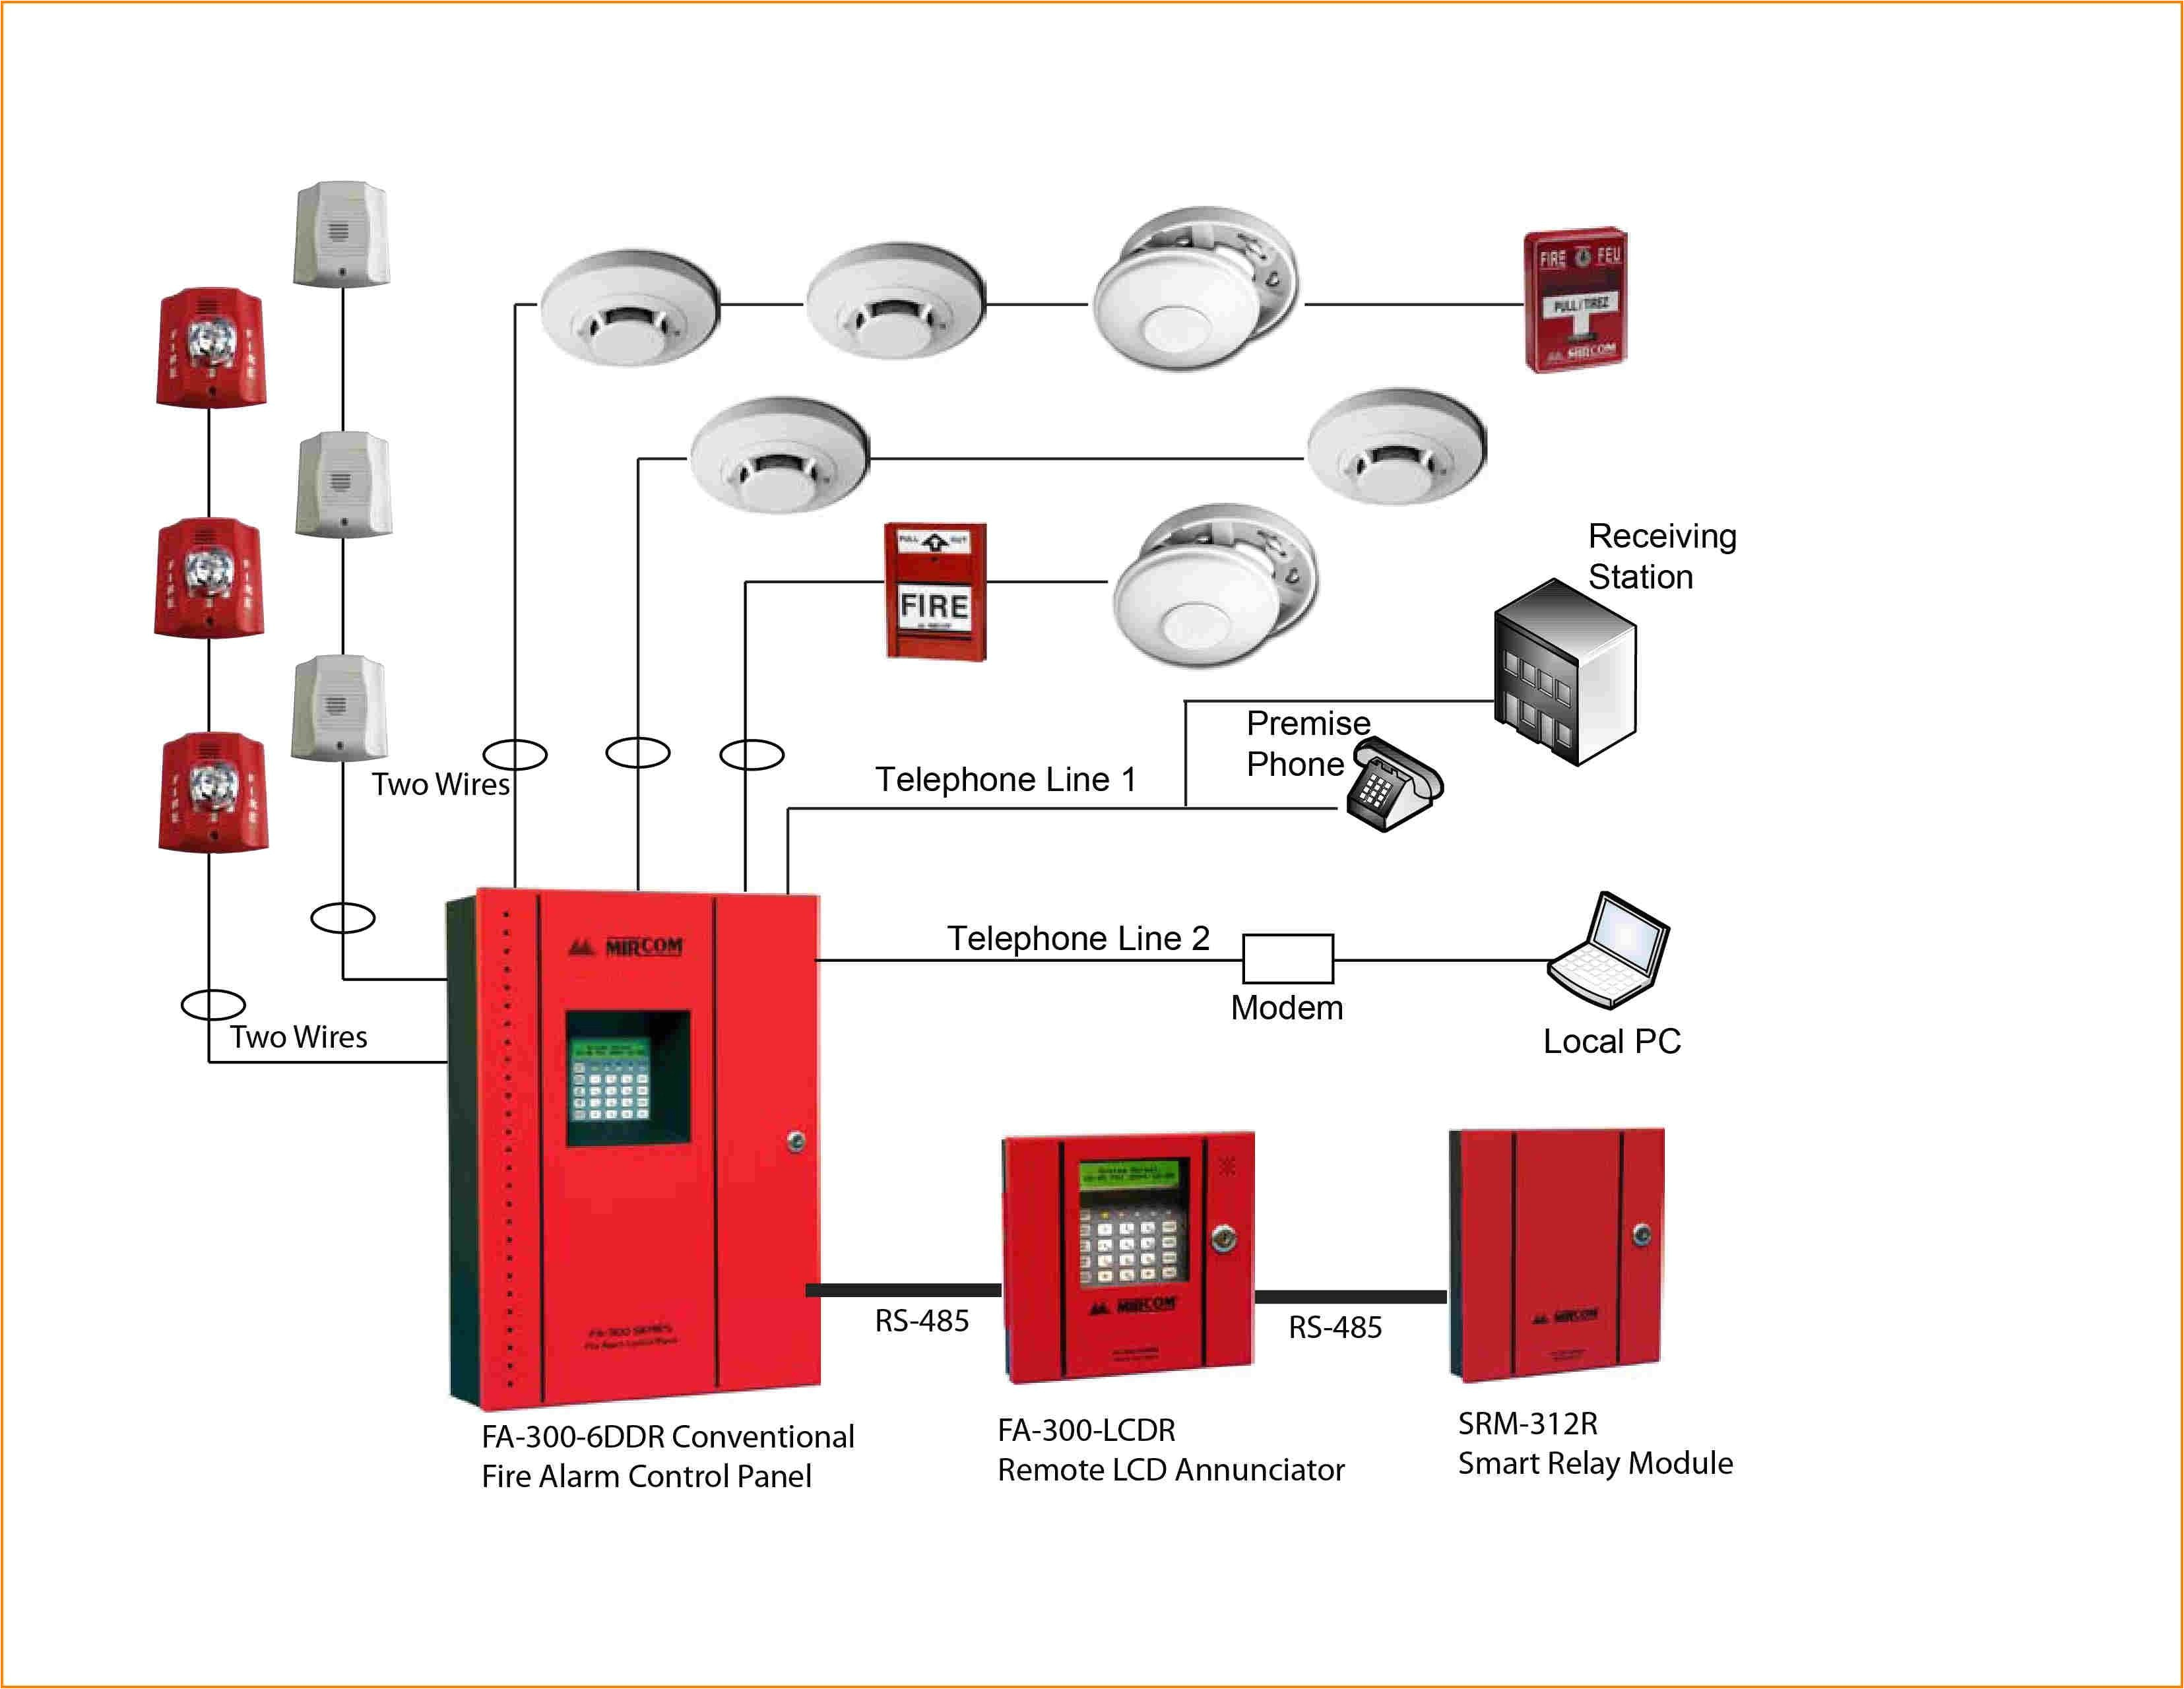 fire alarm system schematic diagram wiring diagram used fire alarm system wiring methods basic fire alarm system wiring